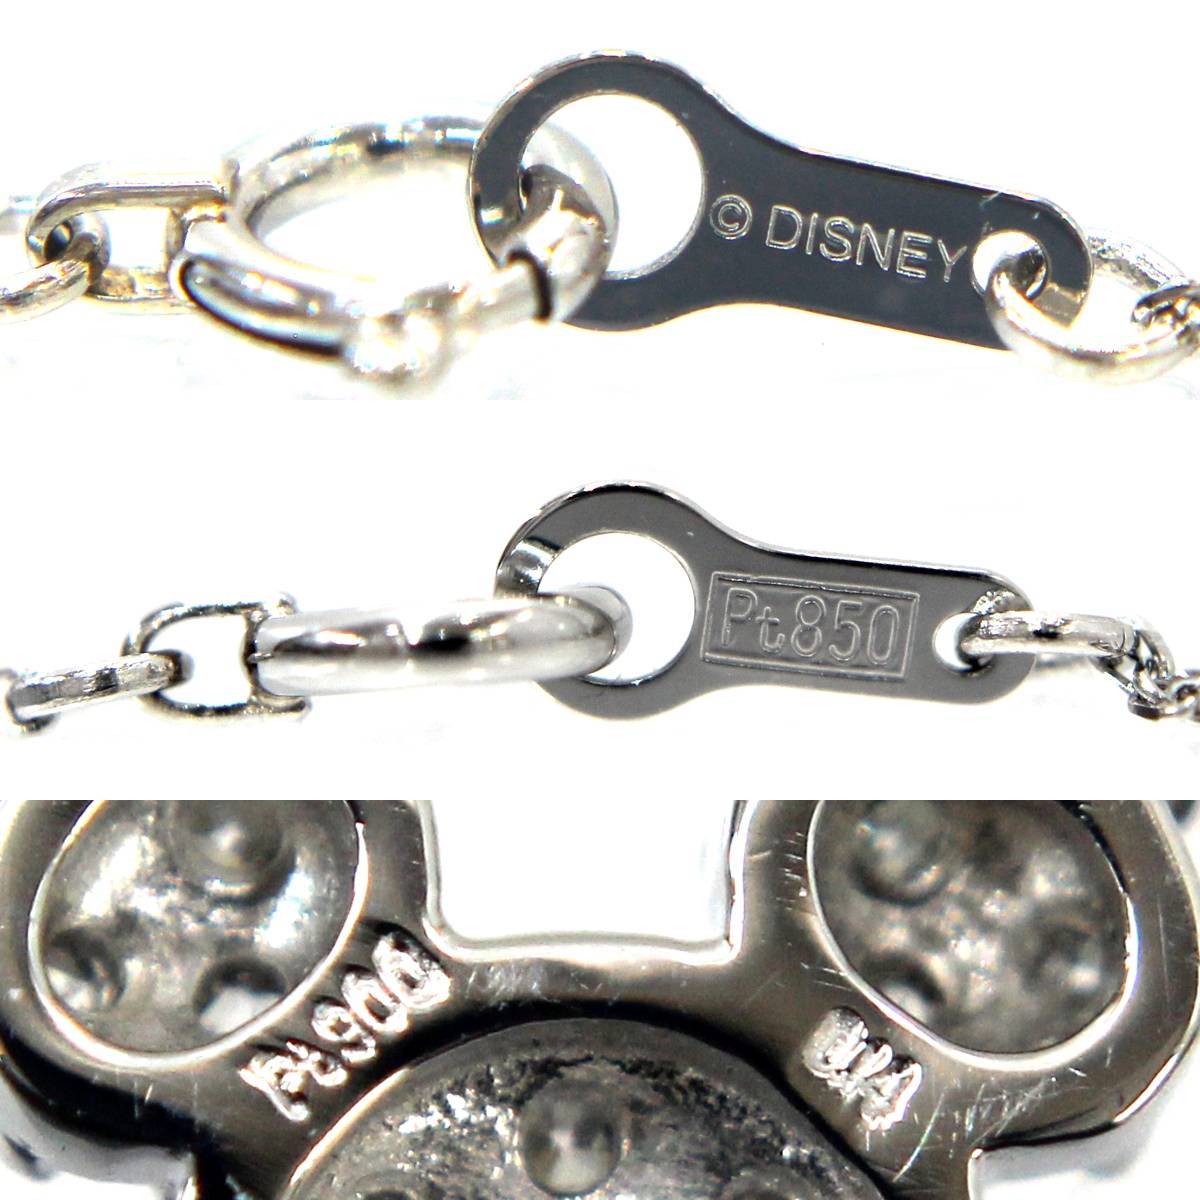 ディズニー Pt900/ Pt850 Disney US公式商品 ミッキーマウス ネックレス ダイヤモンド0.14ct 長さ39cm 磨き仕上げ品 KS Aランク_画像6